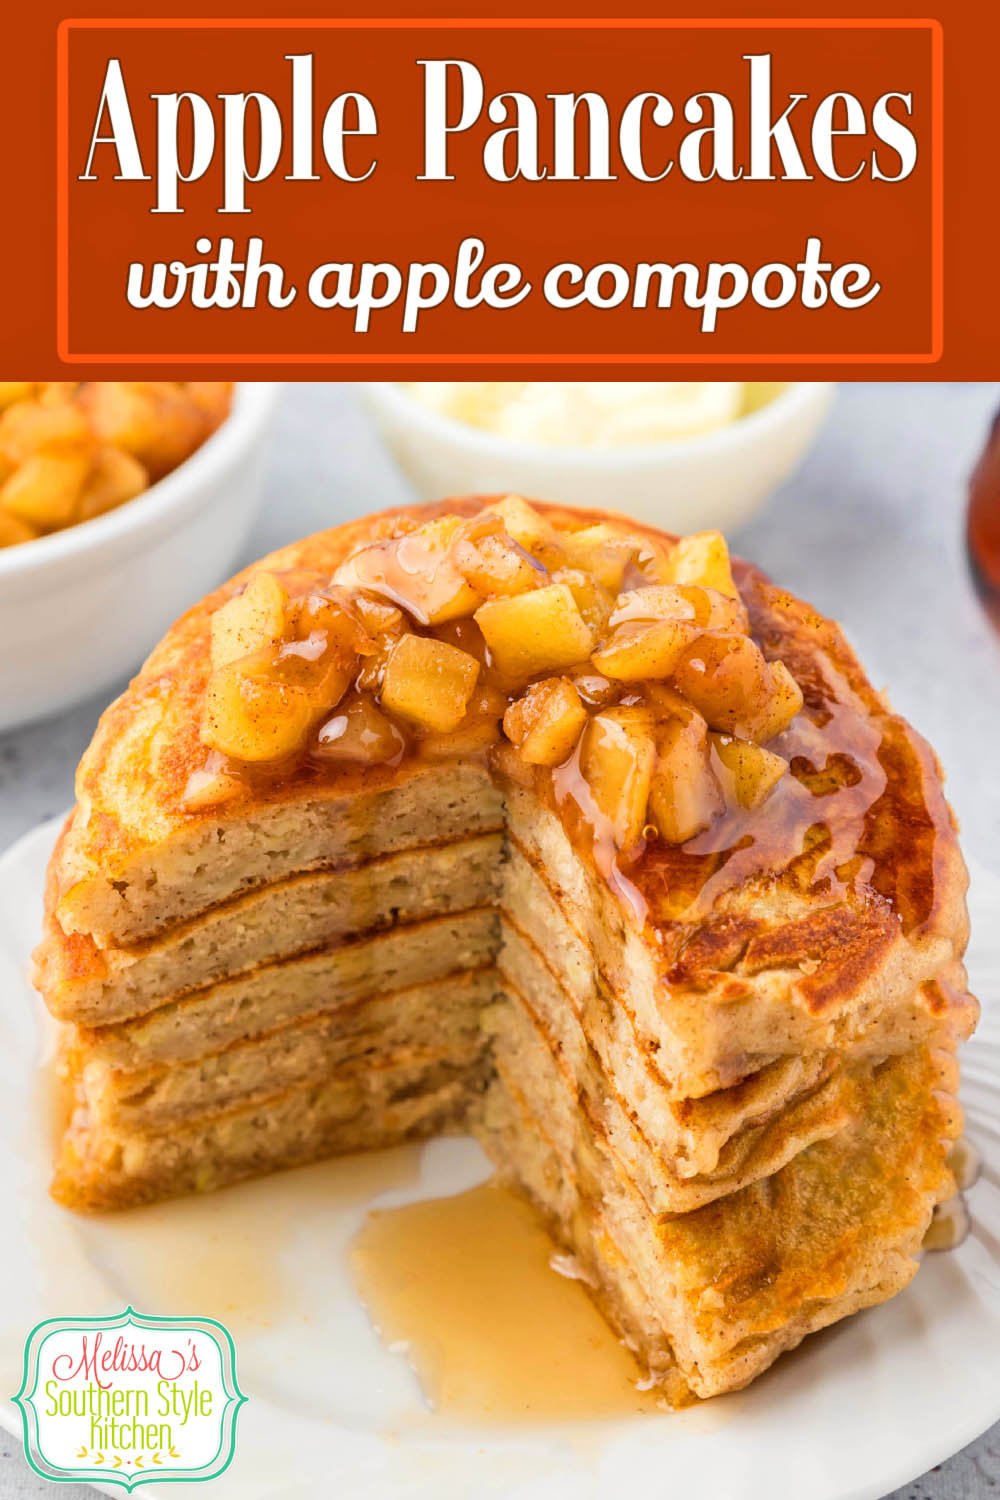 Treat the family to a stack of homemade Apple Pancakes for breakfast or brunch! #pancakes #applepancakes #pancakerecipes #GrannySmithapples #applerecipes #breakfast #brunch via @melissasssk